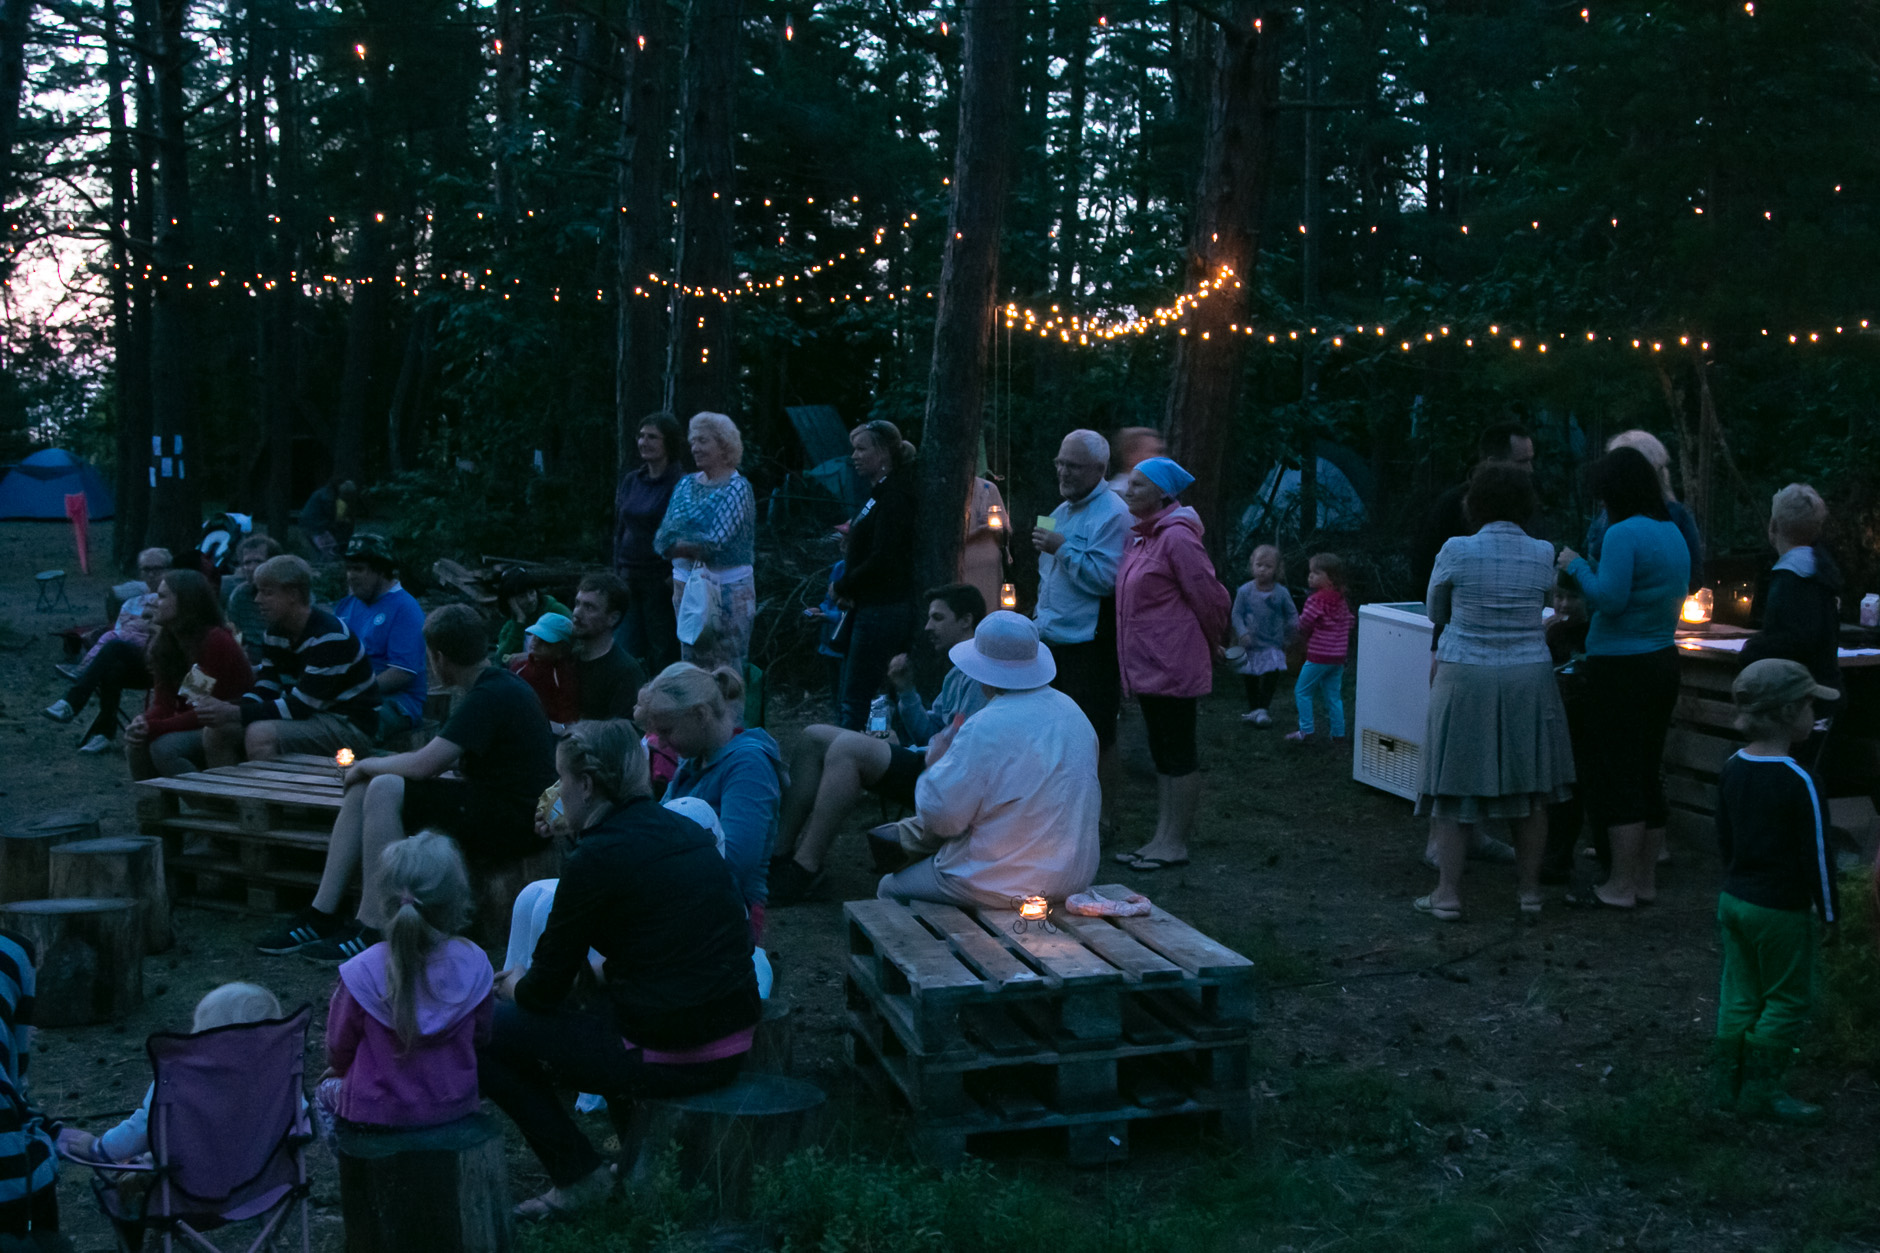 Karmeli koguduse laager: Omadega metsas 2. Kohvikuõhtu